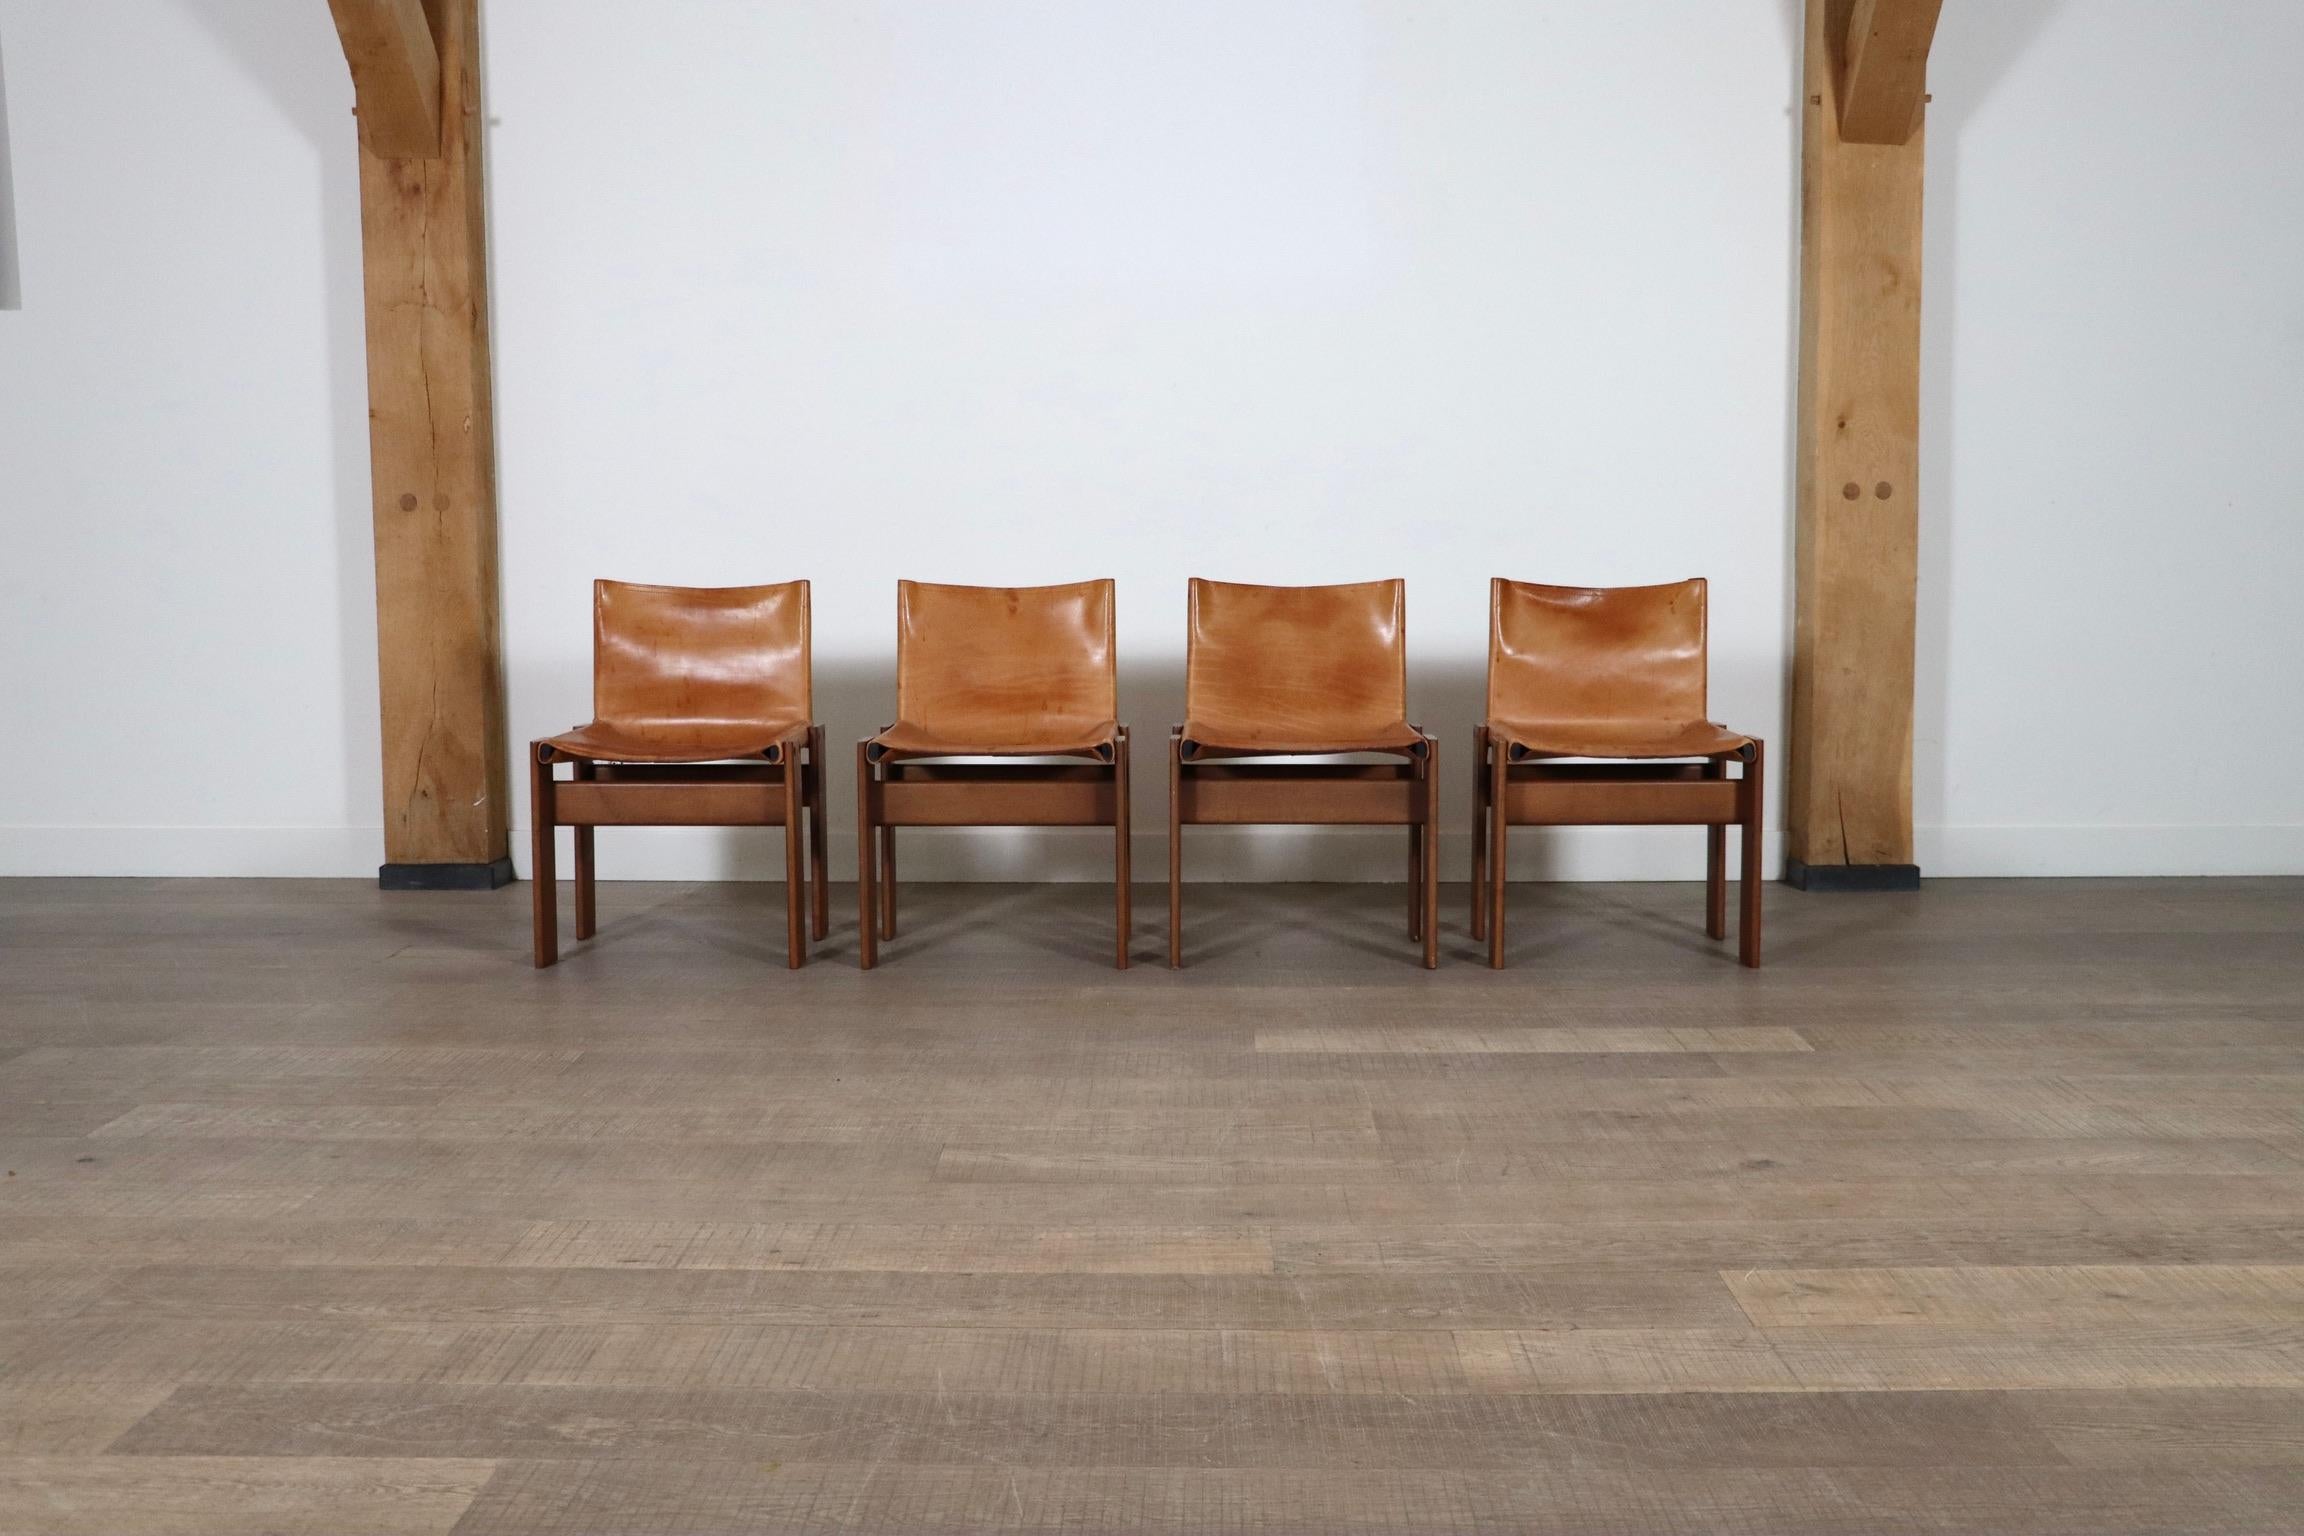 Fantastique ensemble de 4 chaises 'Monk' conçues par Afra et Tobia Scarpa pour Molteni, Italie 1974. Le design sobre, d'après son nom 